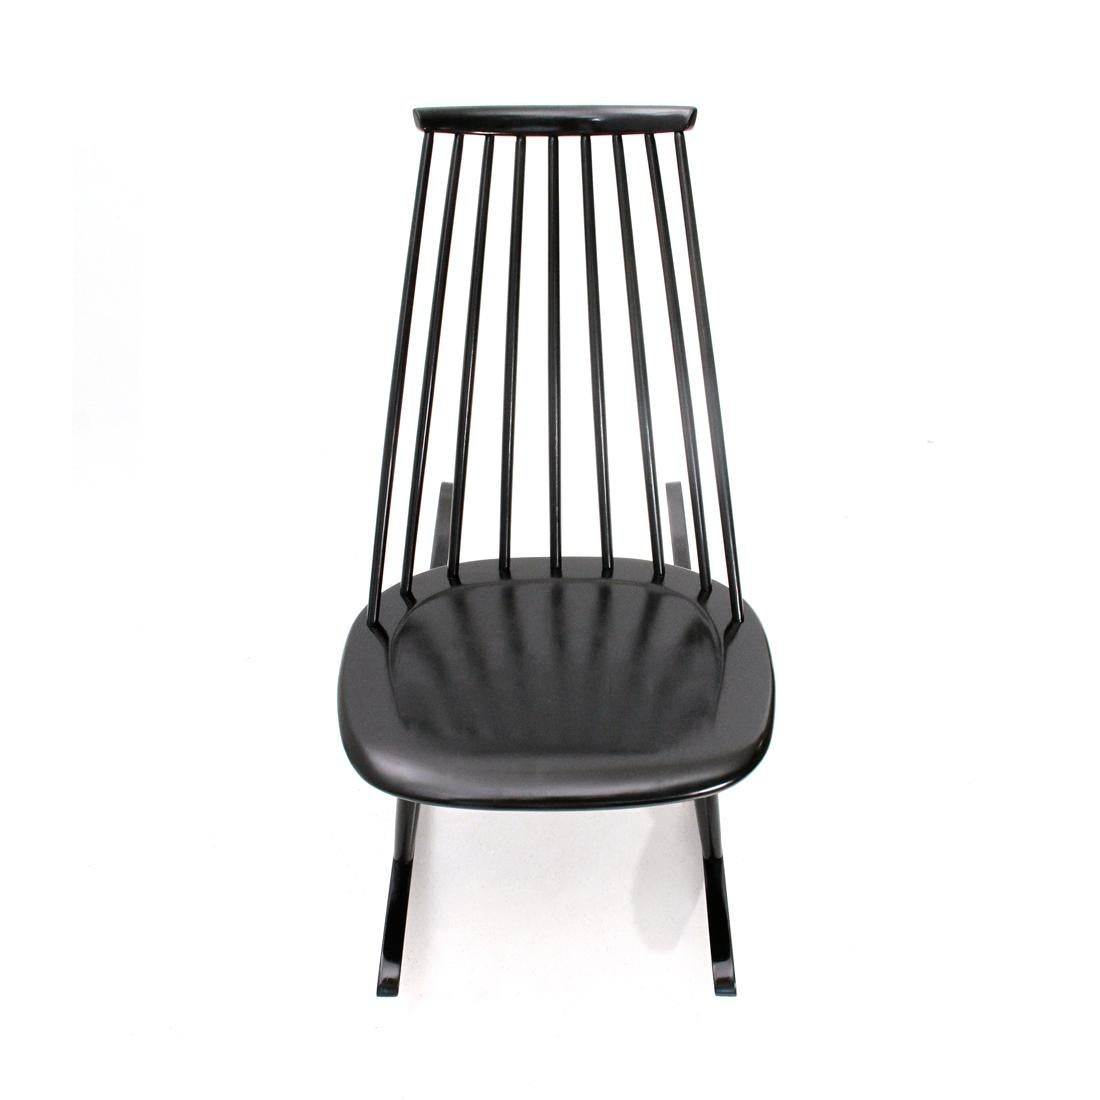 Finnish Mid-Century Modern Black Mademoiselle Rocking Chair by Ilmari Tapiovaara for Art